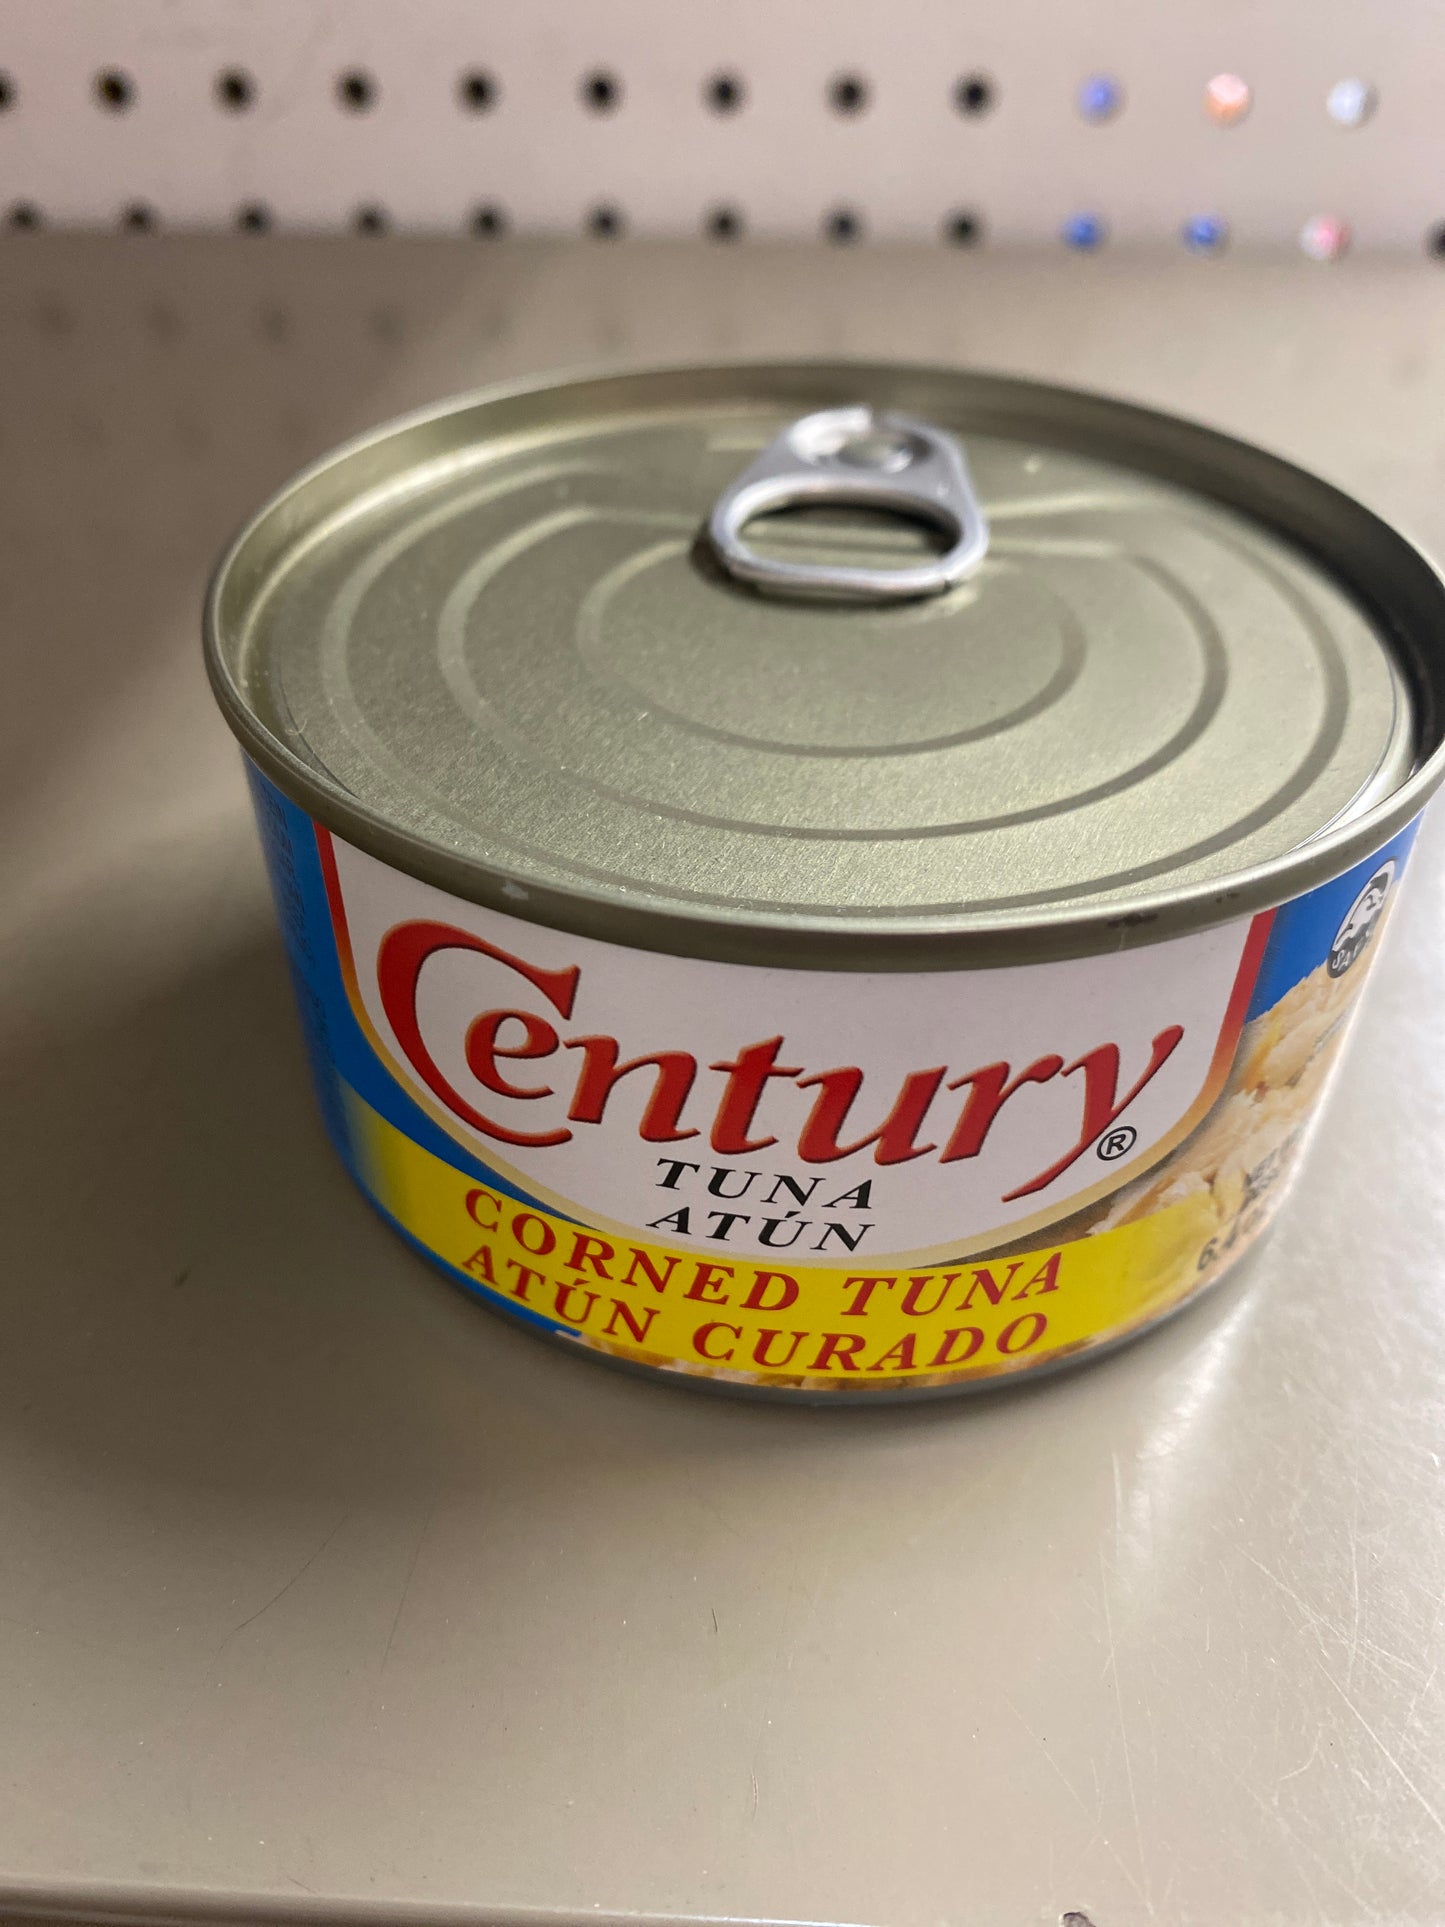 Century Tuna Corned Tuna - 6.4oz